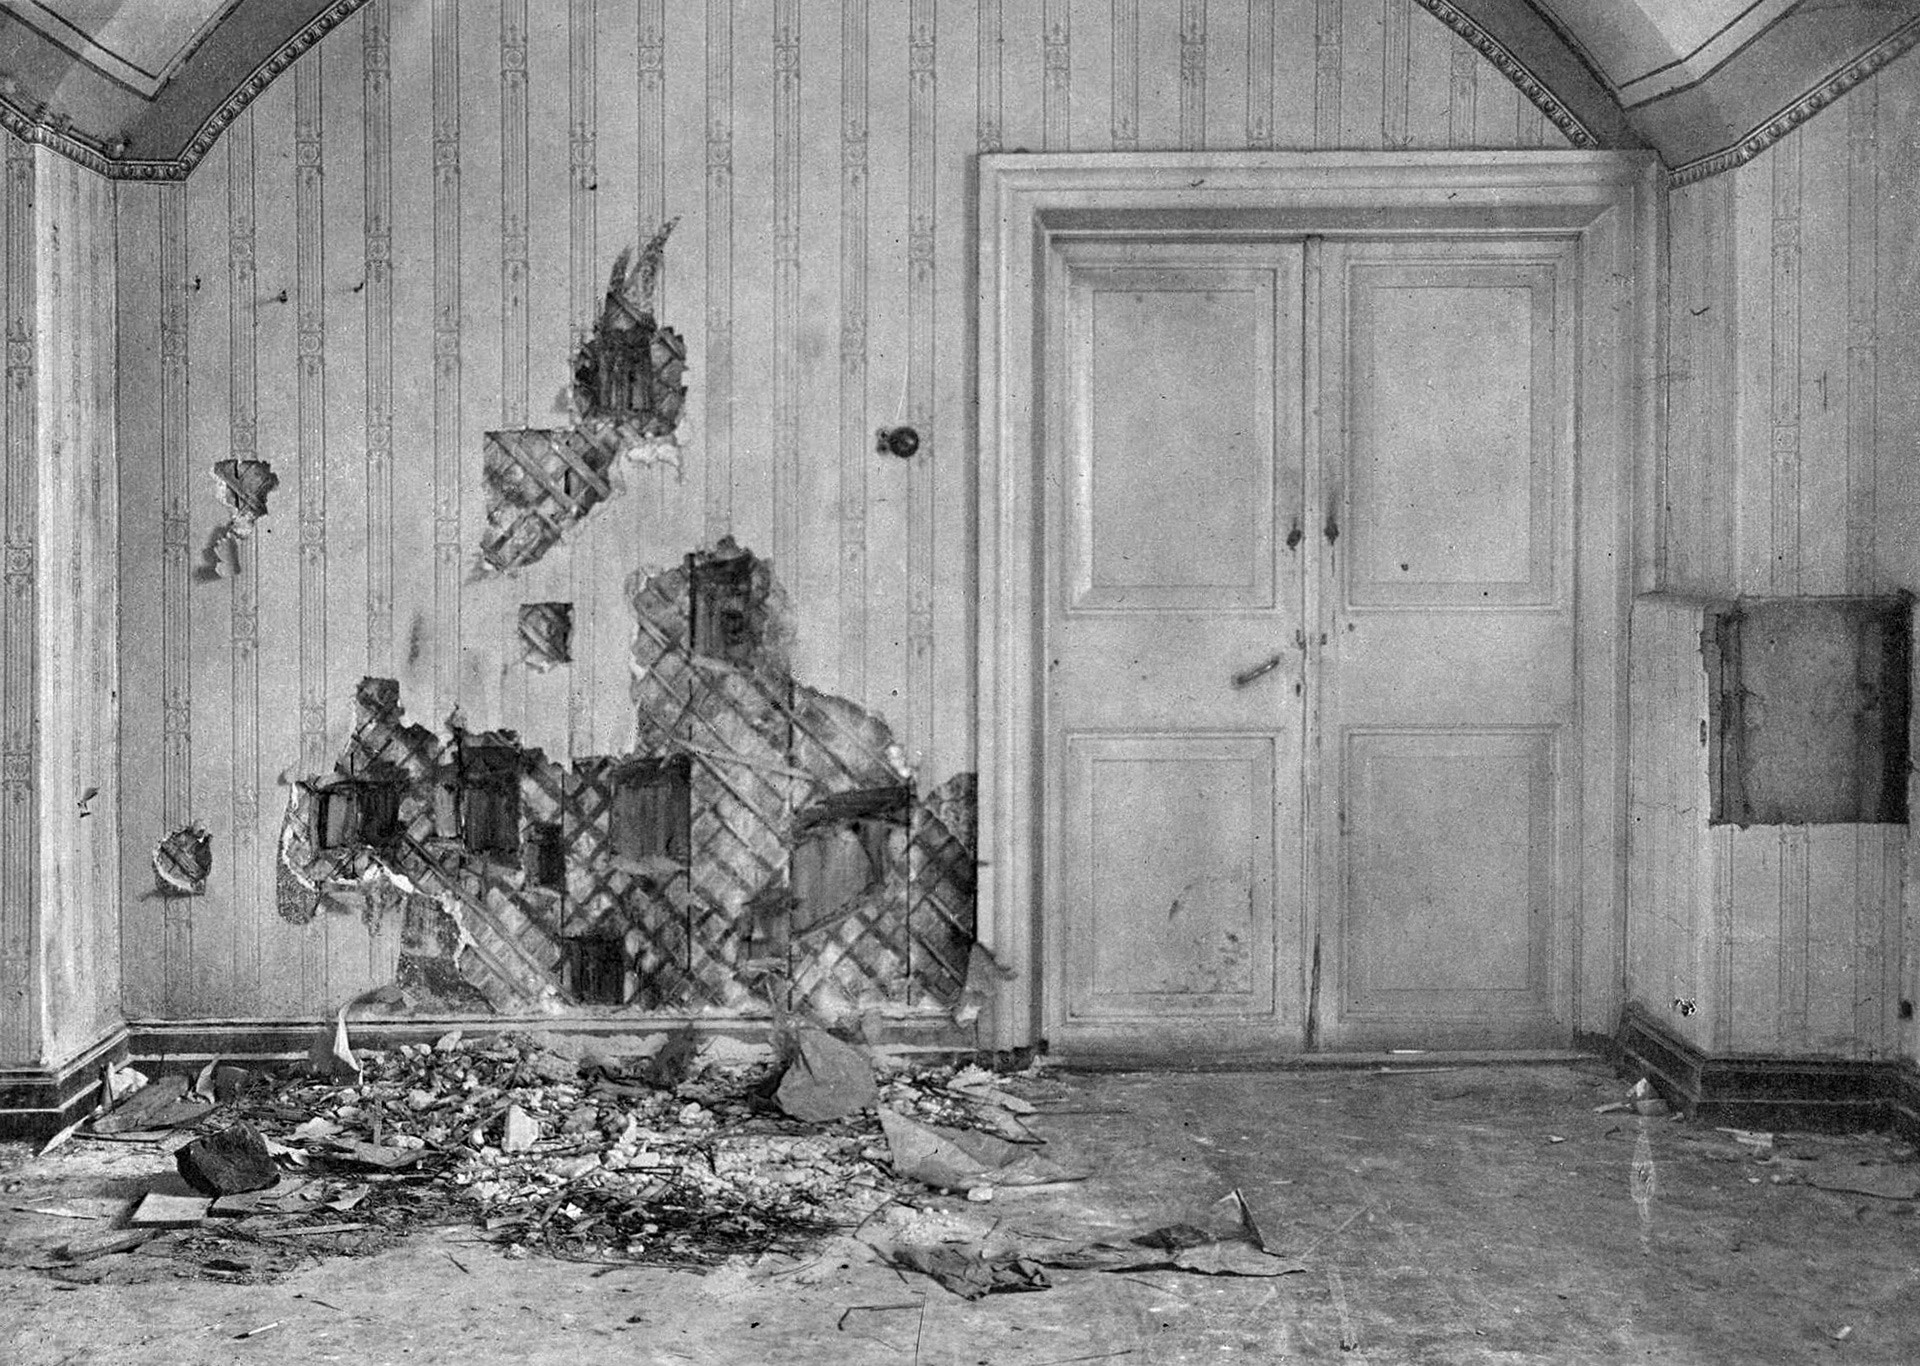 El sótano de la casa de Ipatiev, donde la familia Romanov fue asesinada. La pared ha sido prácticamente desmontada por los investigadores del suceso, en busca de balas y otras pruebas.